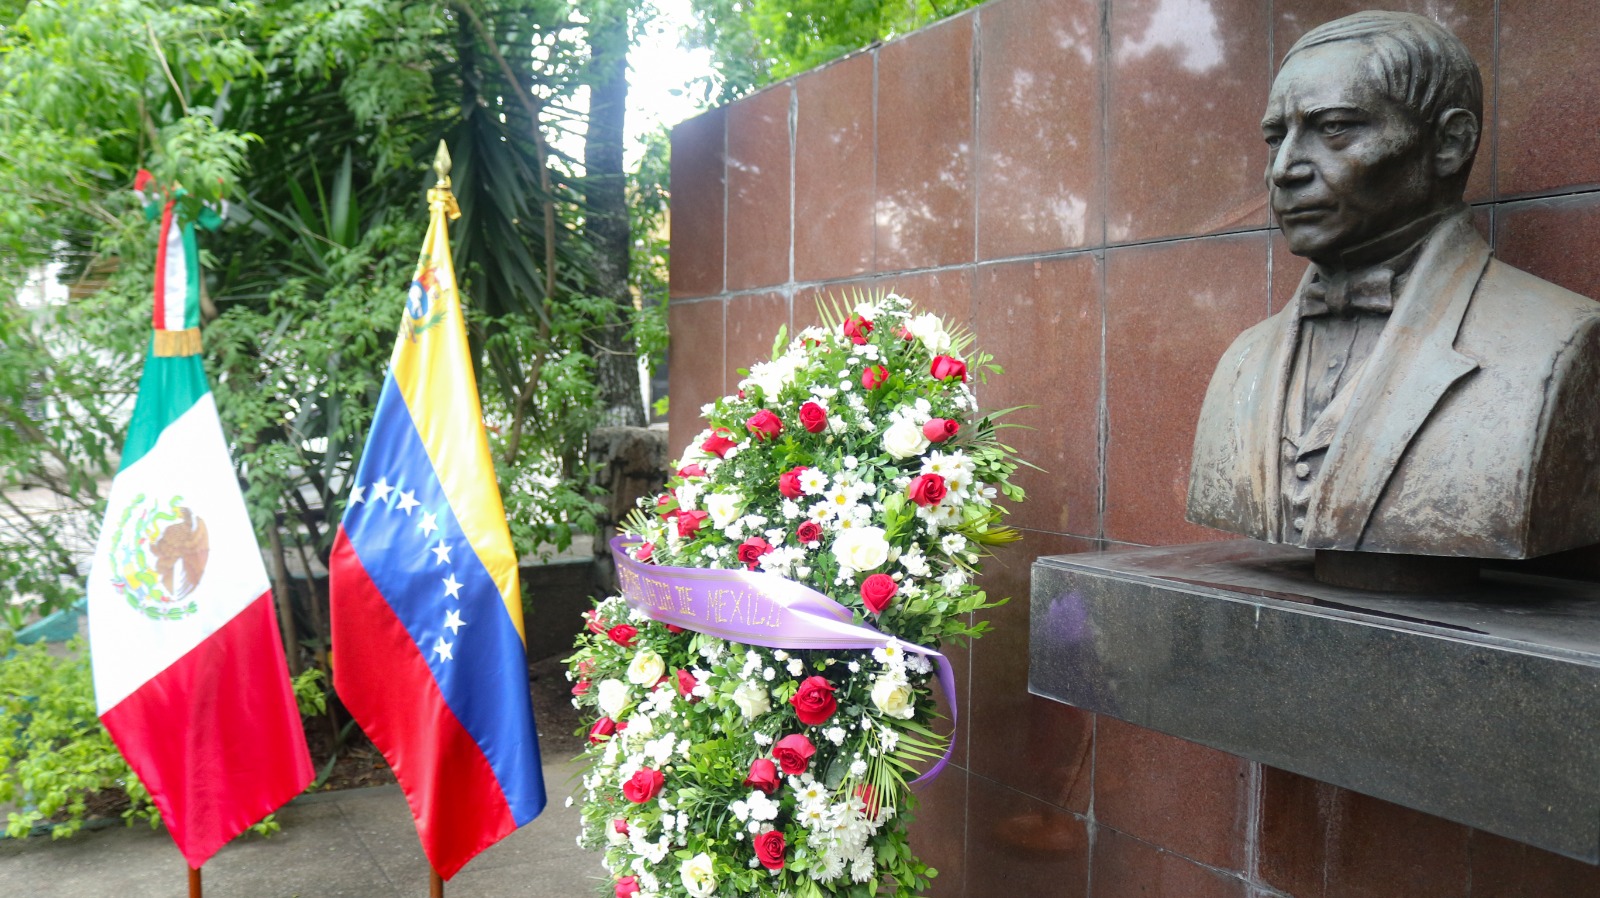 Embajada de México en Venezuela realizó ofrenda floral en honor a Benito Juárez por aniversario de su fallecimiento